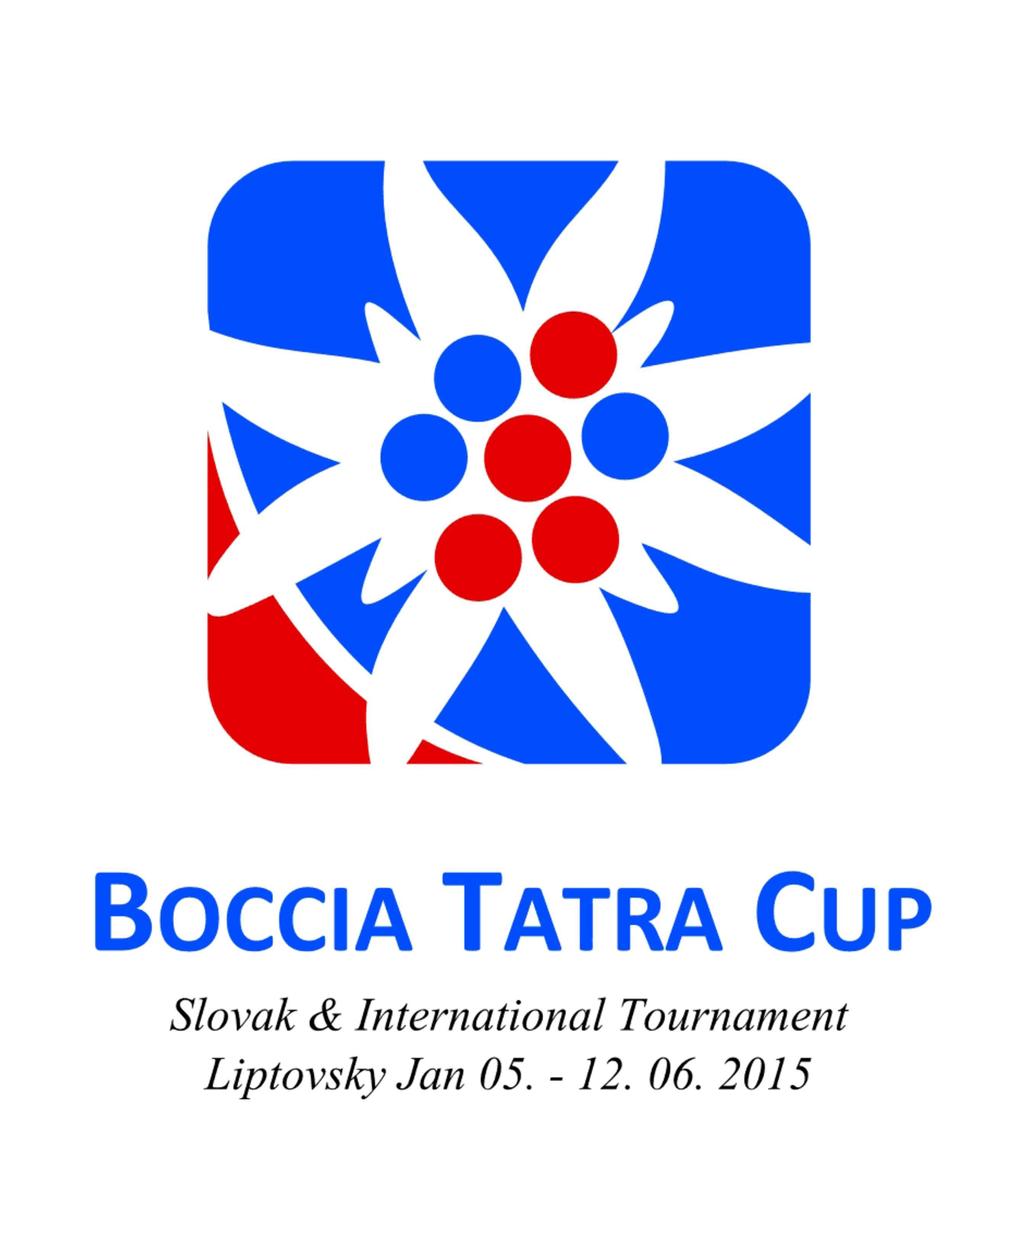 Názov podujatia: Boccia Tatra Cup Charakteristika: Boccia je špecifický, paralympijský, indoorový šport, podobný pétanque-u, ktorý je vhodný pre ľudí pohybujúcich sa na mechanických, alebo